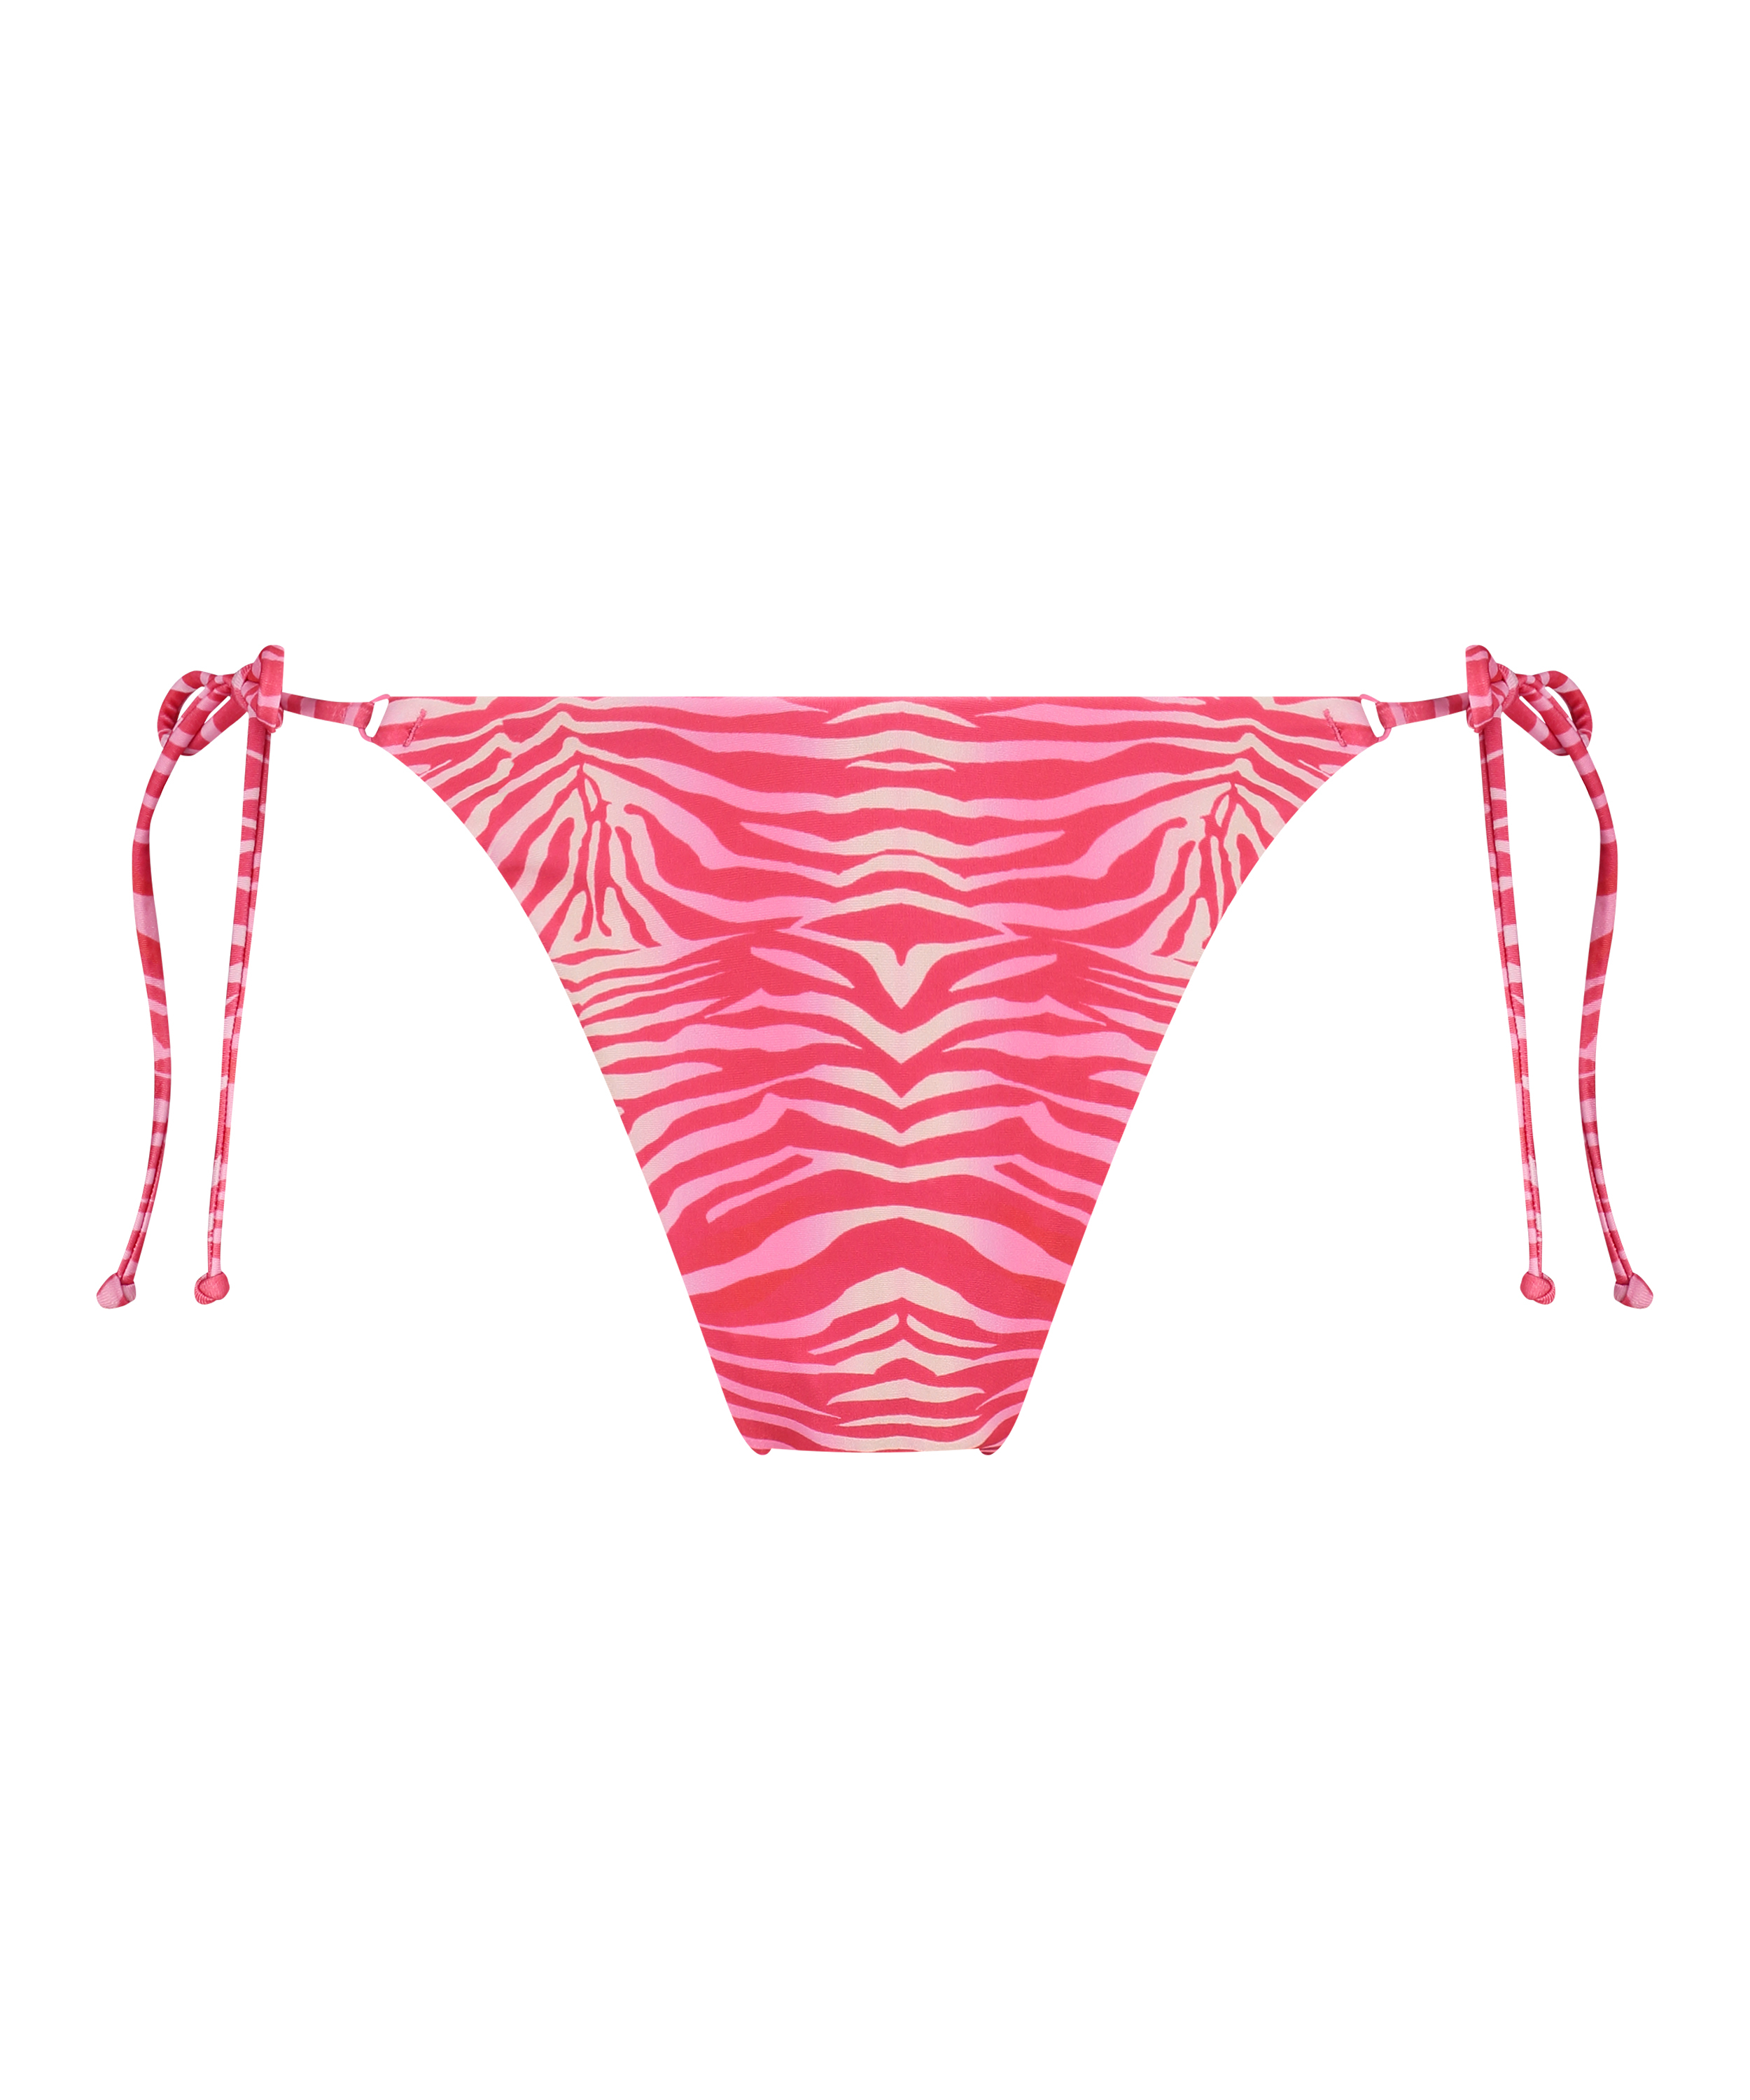 Chile High Leg Bikini Bottom, Pink, main